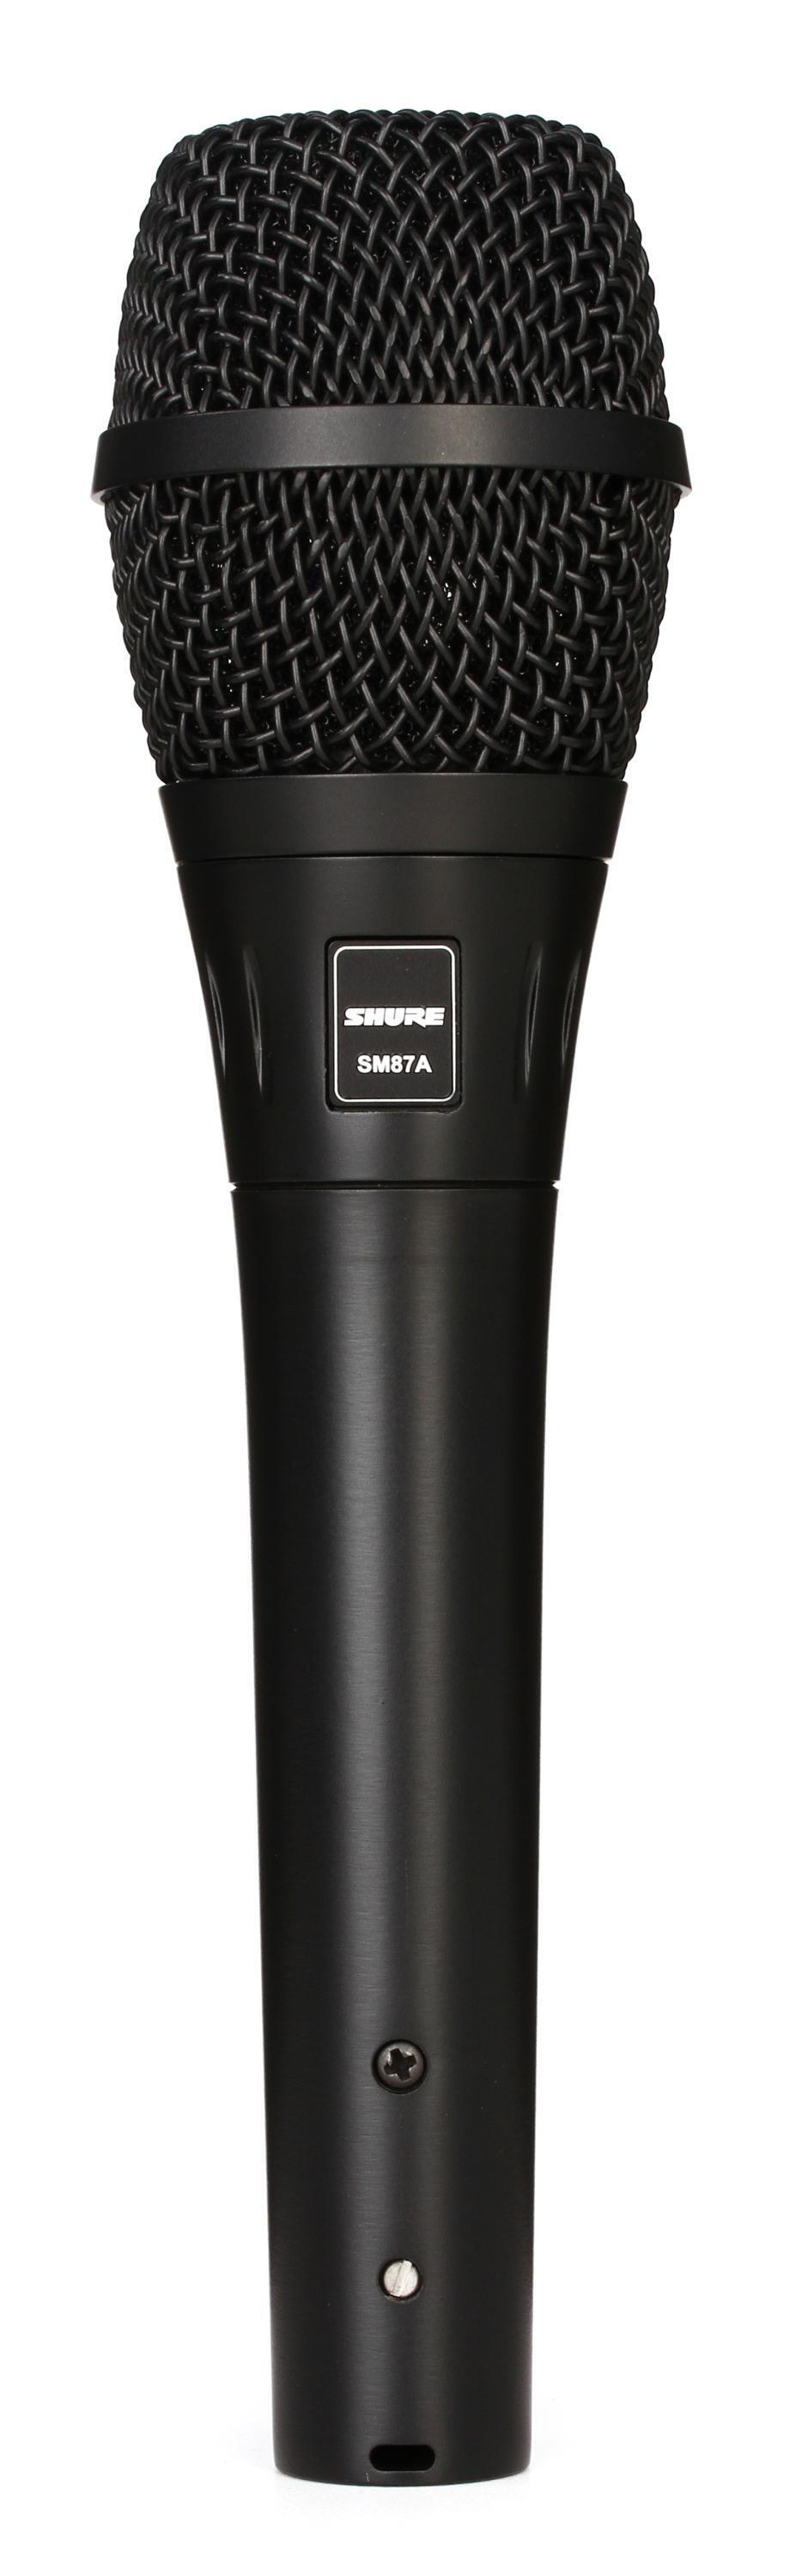 Micrófono Condensador Shure Sm87a — Palacio de la Música